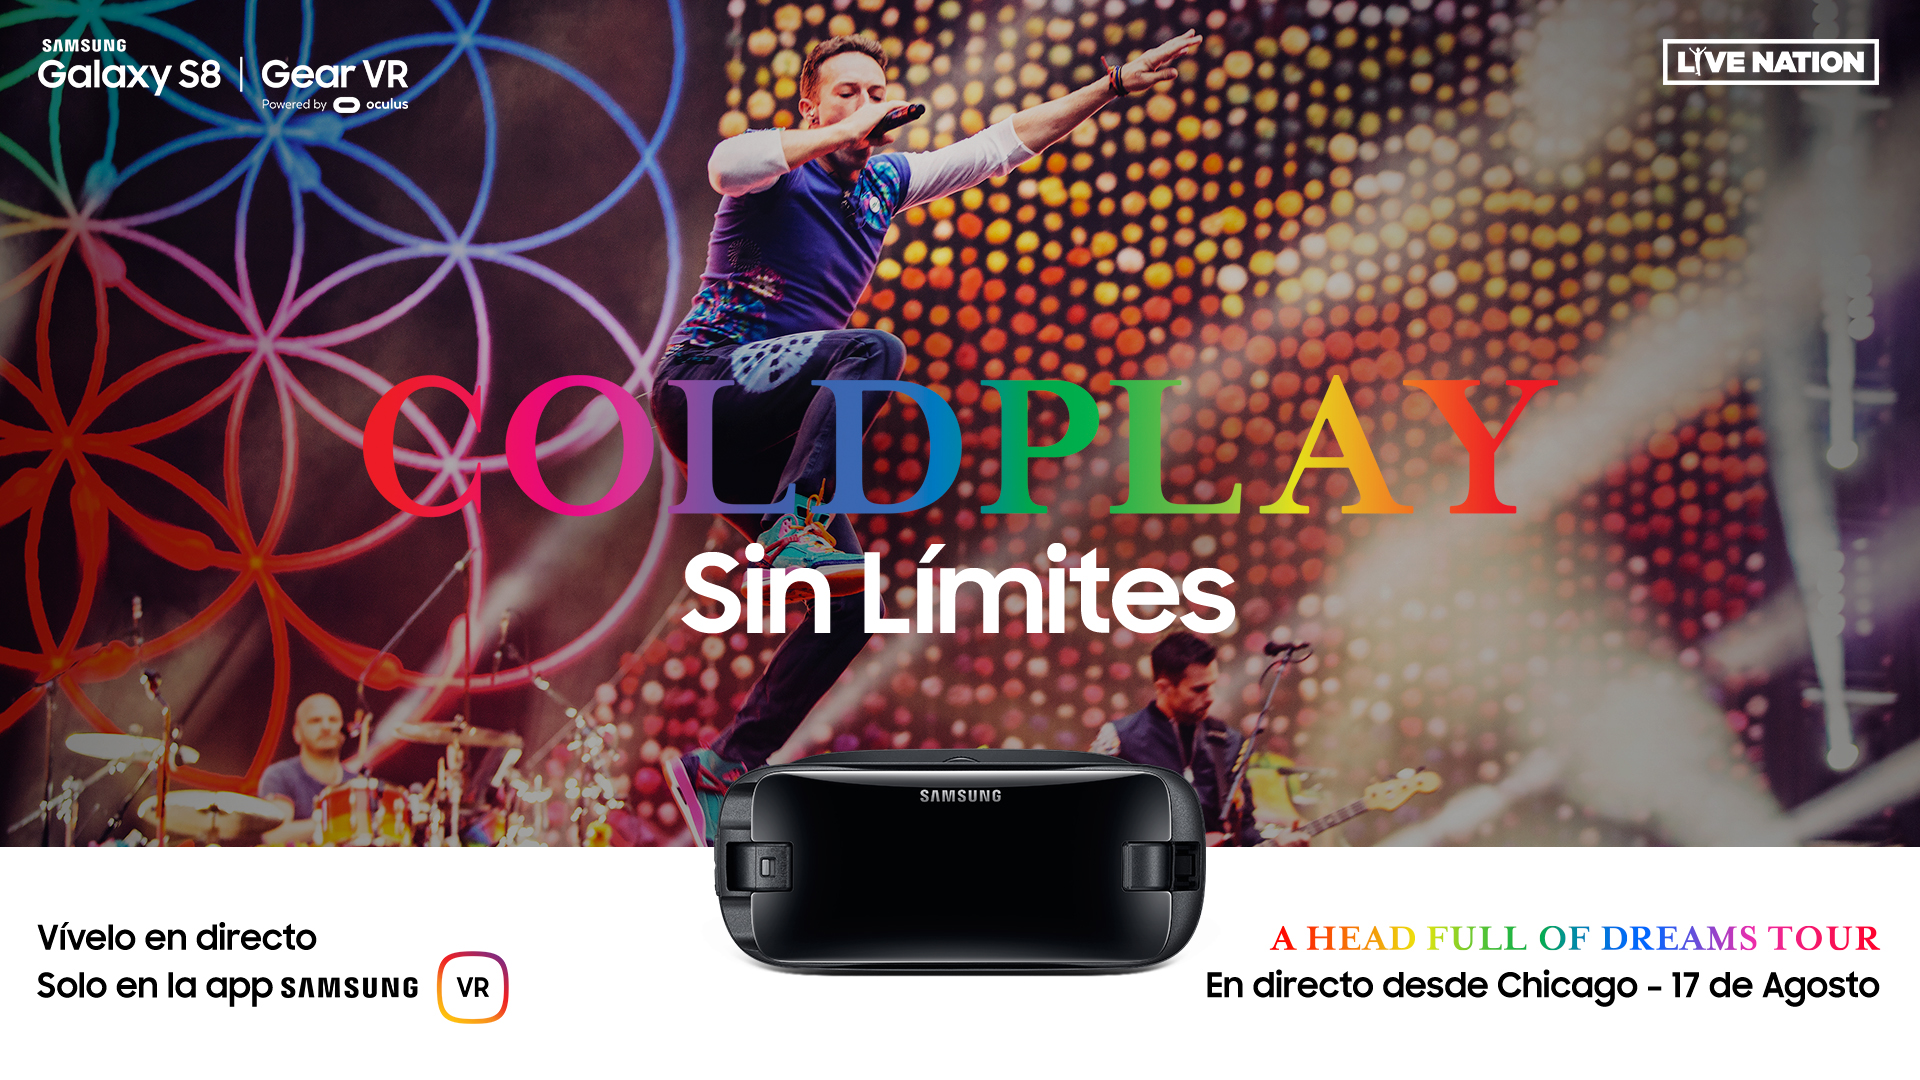 El concierto de Coldplay en California se podrá ver en Realidad Virtual gracias a Samsung y Live Nation